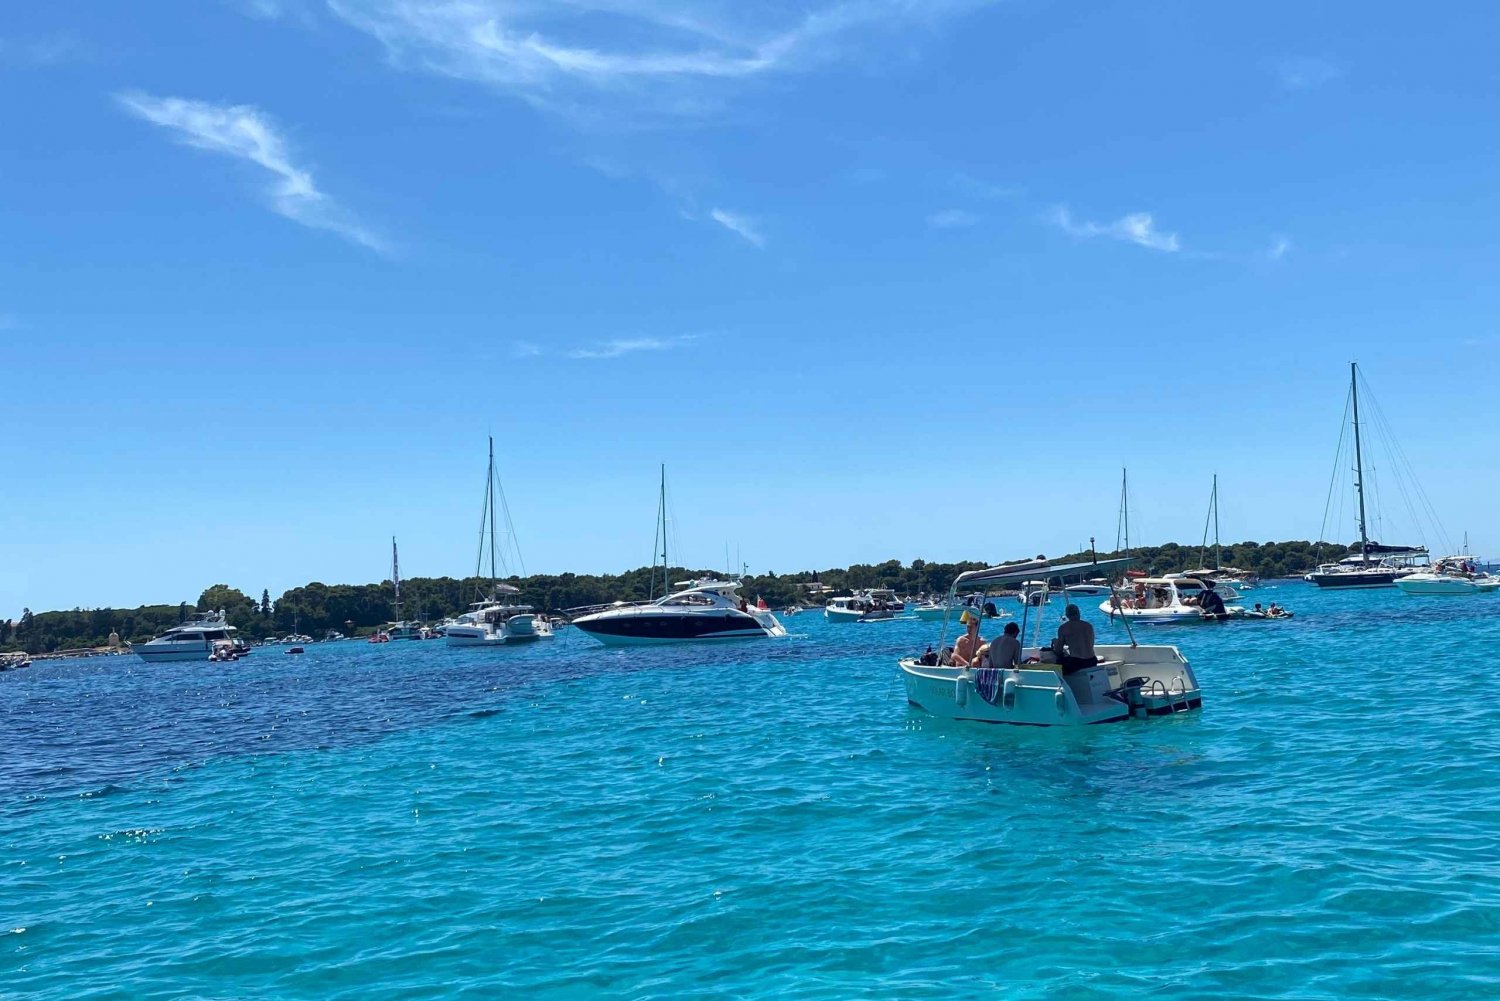 Antibes: Sunset Boat Cruise/fejring med venner